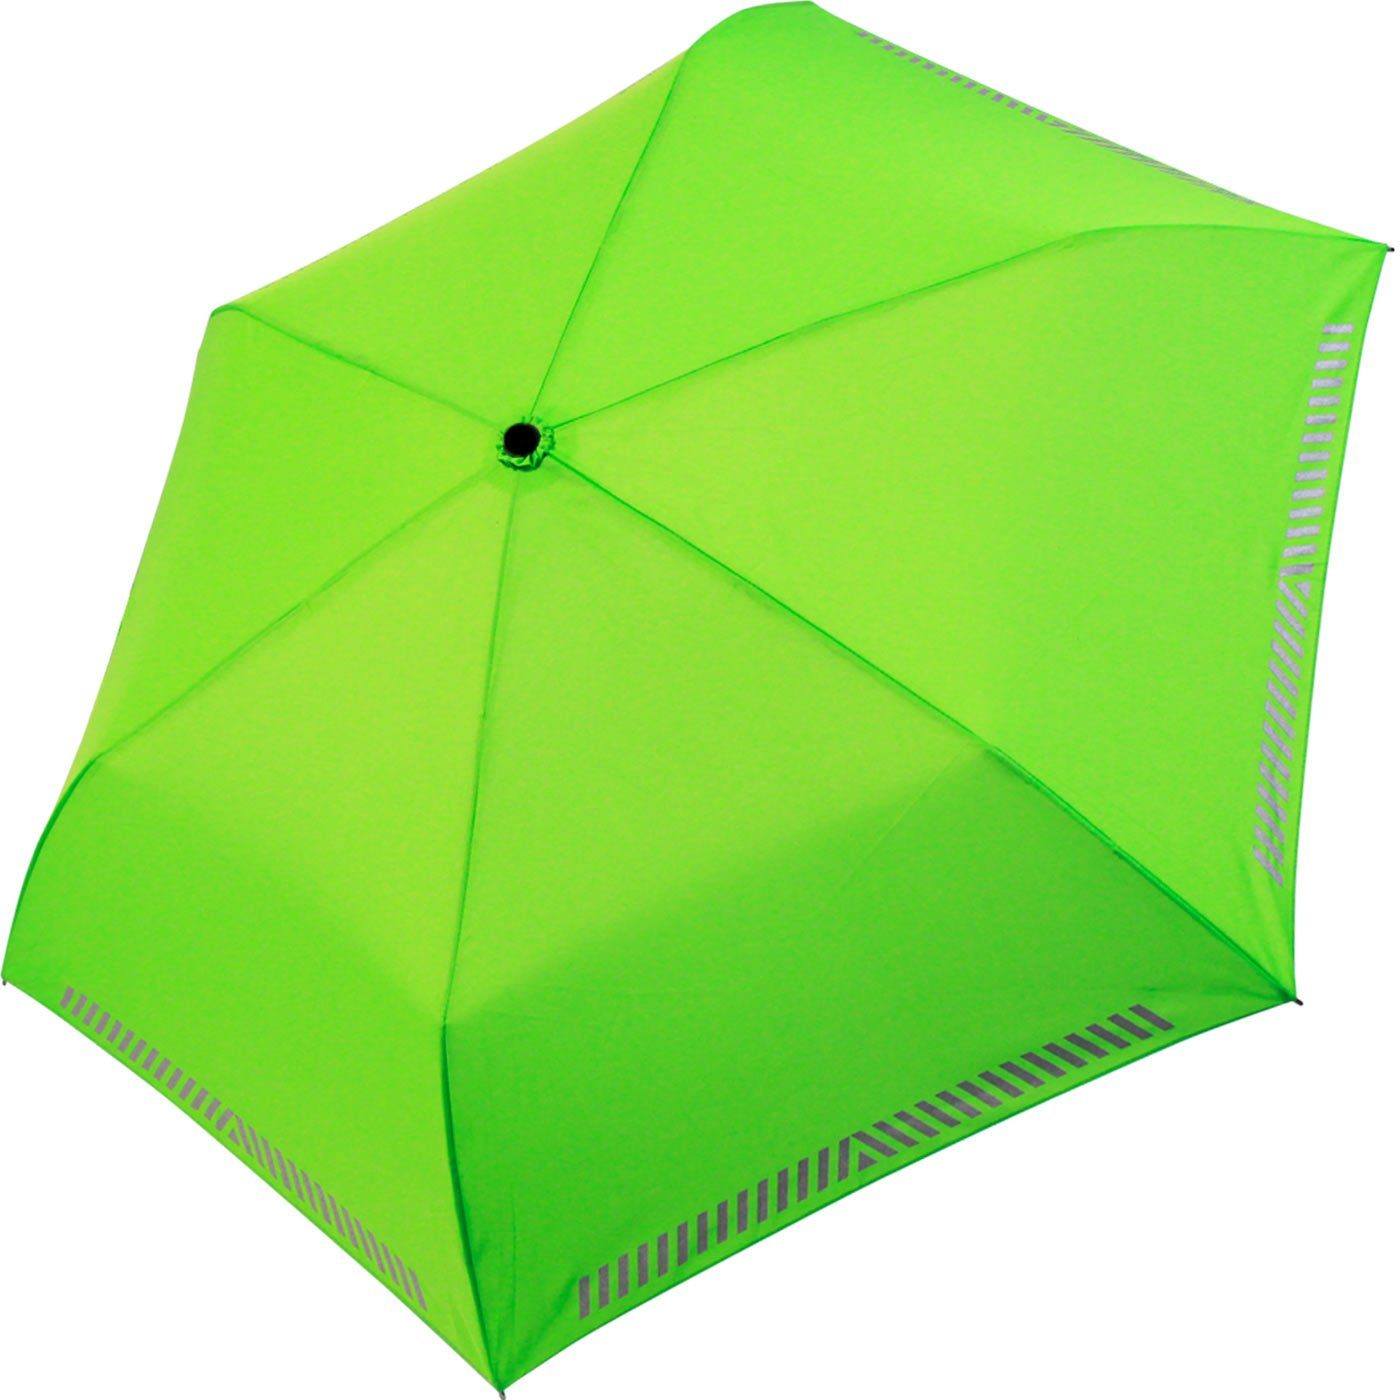 iX-brella Taschenregenschirm Mini Kinderschirm Safety extra reflektierend Reflex leicht, neon-grün